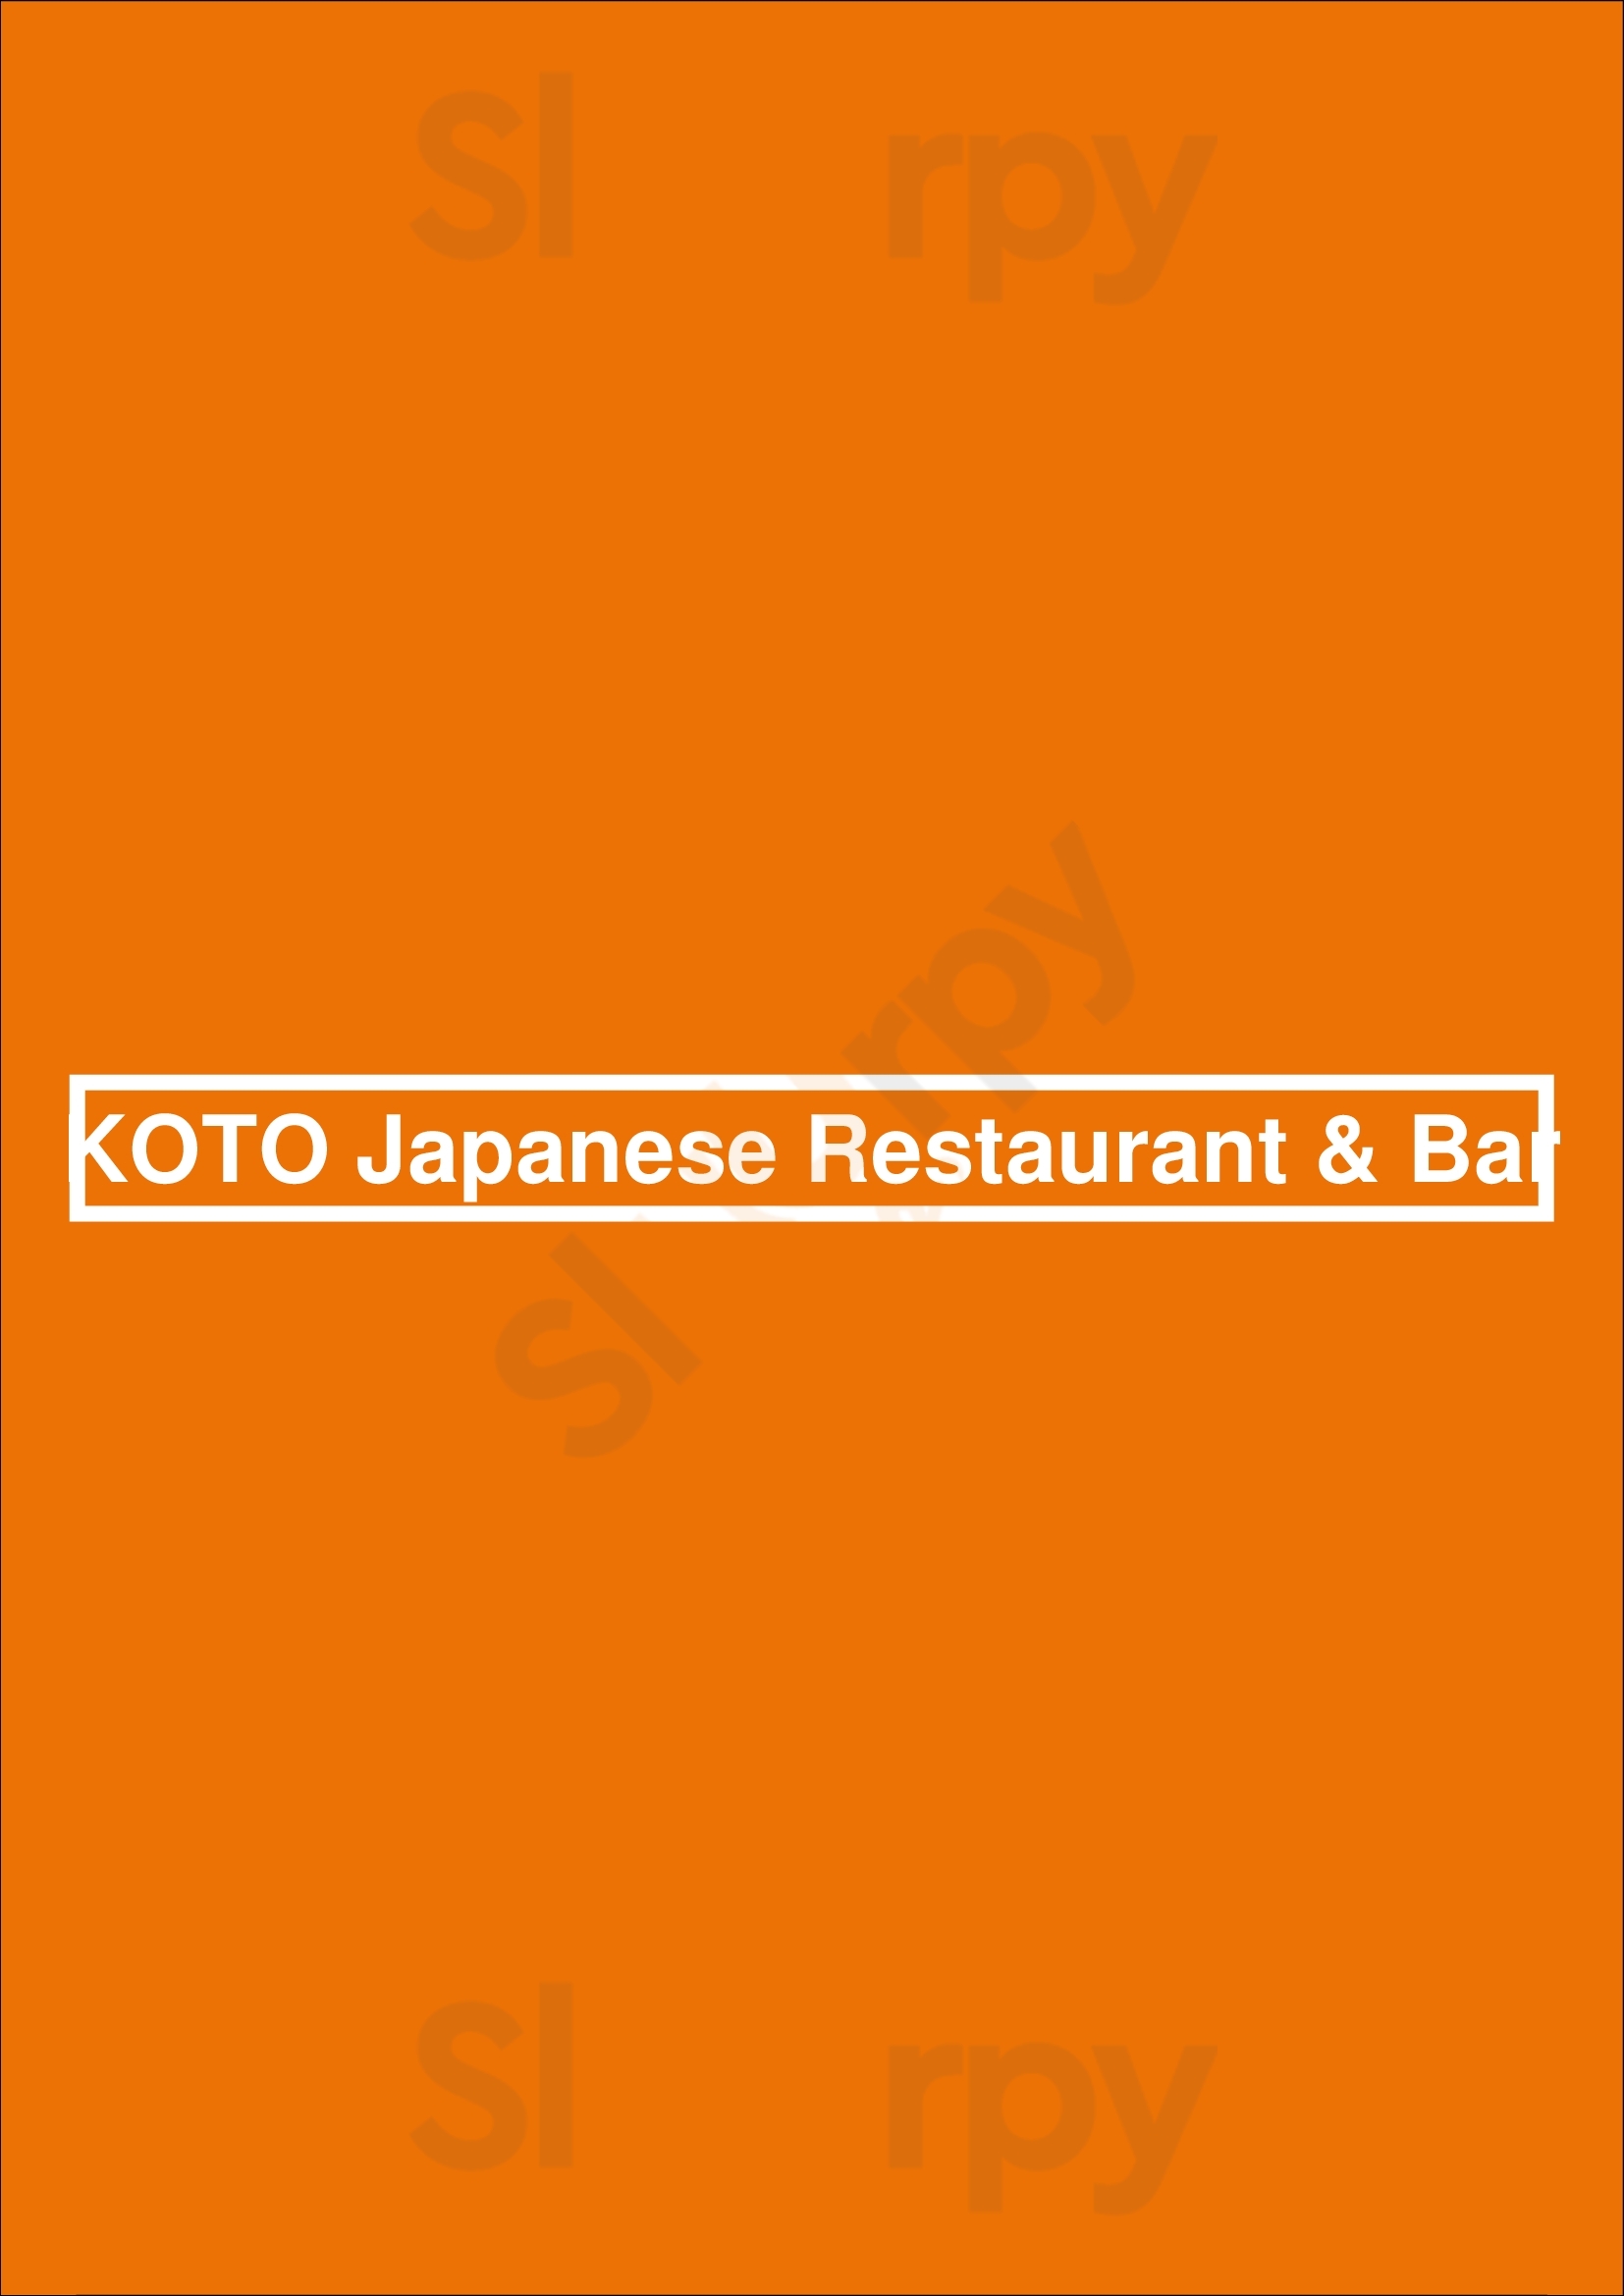 Koto Japanese Restaurant & Bar Houston Menu - 1